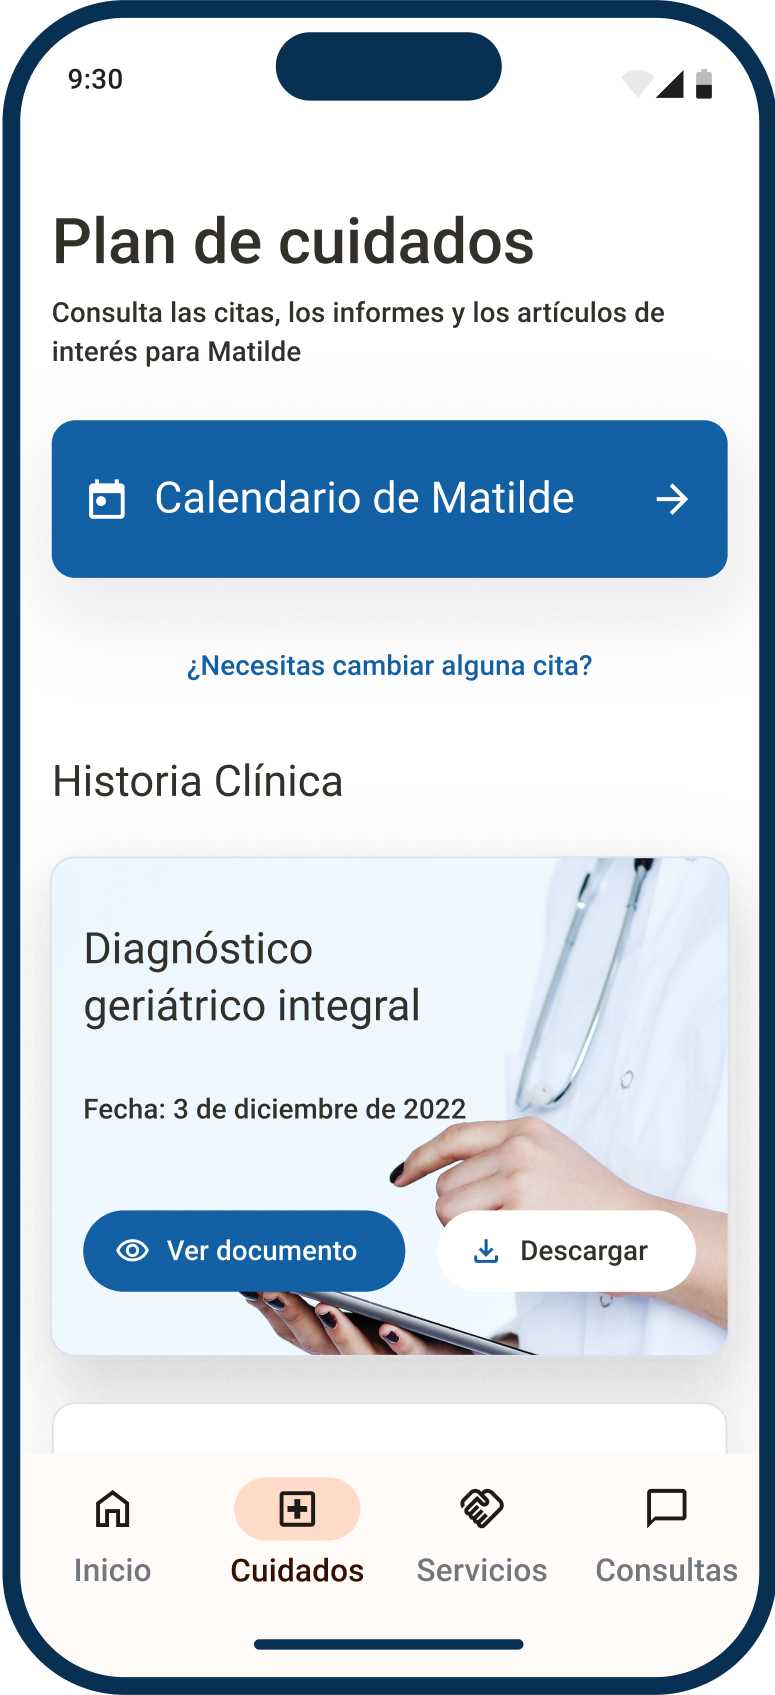 App de Ubikare, pantalla de Plan de Cuidados con acceso a la historia clínica